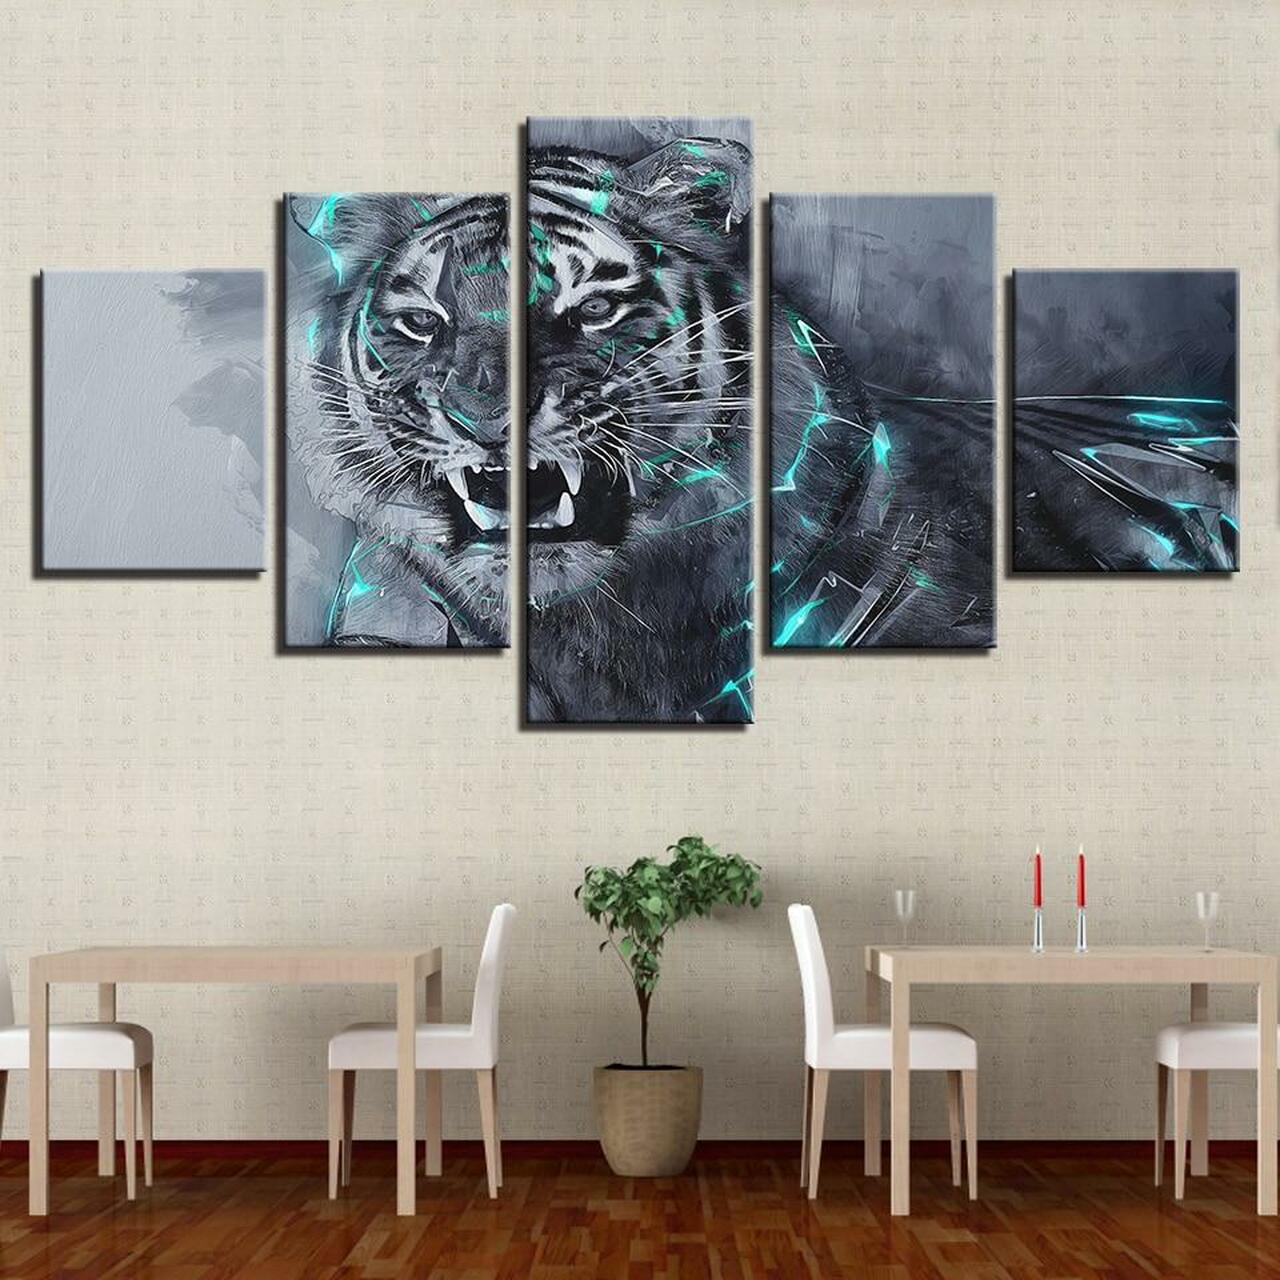 Fierce Tiger 5 Piece Canvas Art Wall Decor